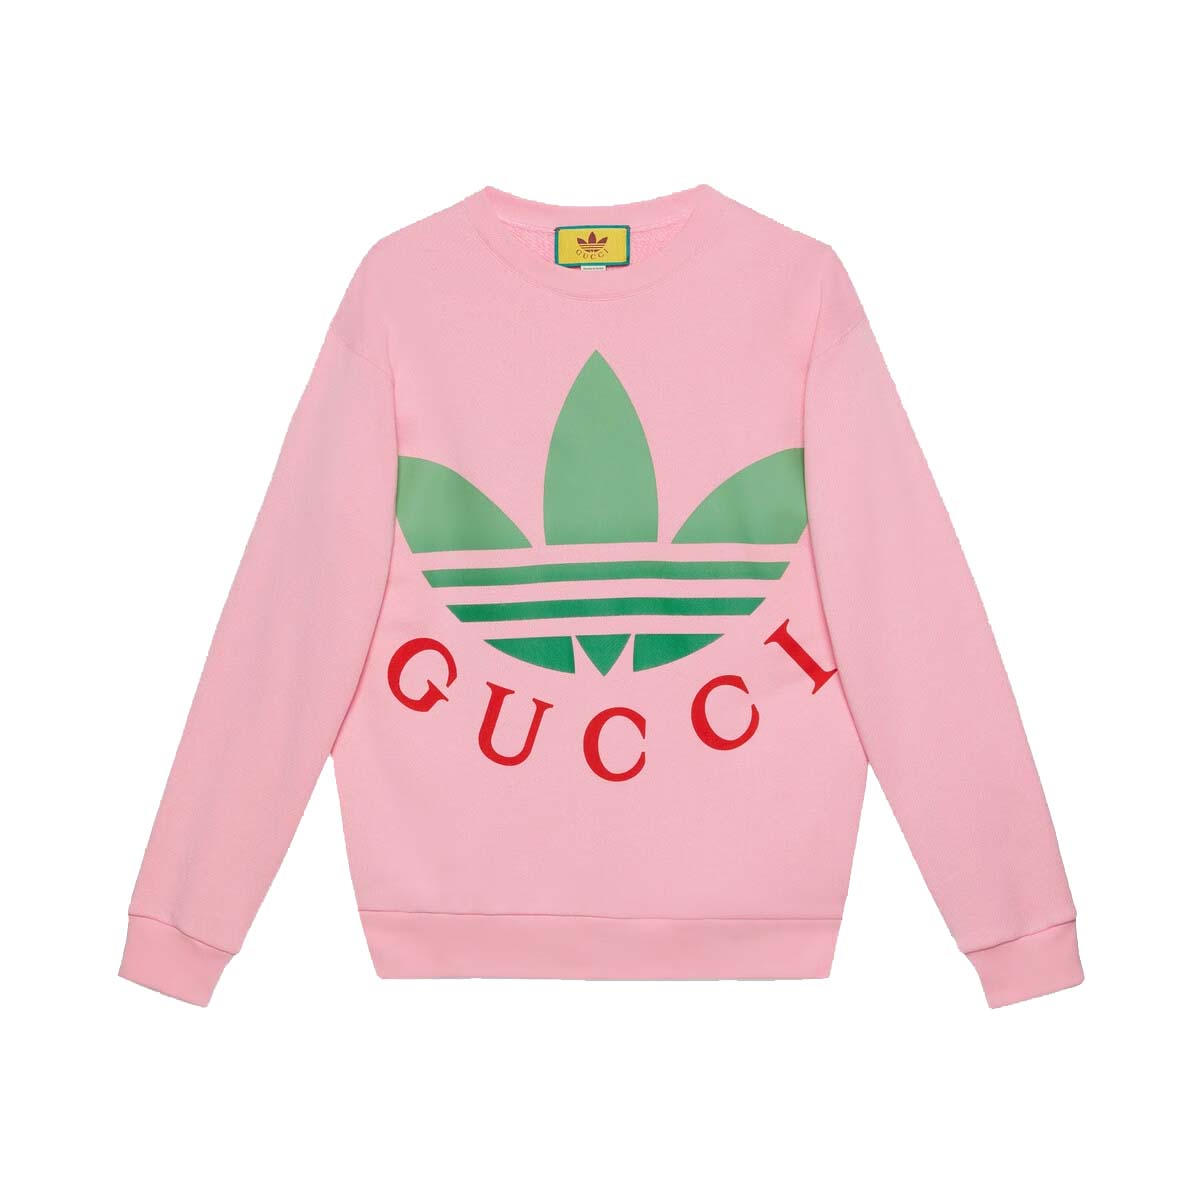 Gucci x adidas Cotton Jersey Sweatshirt Pink